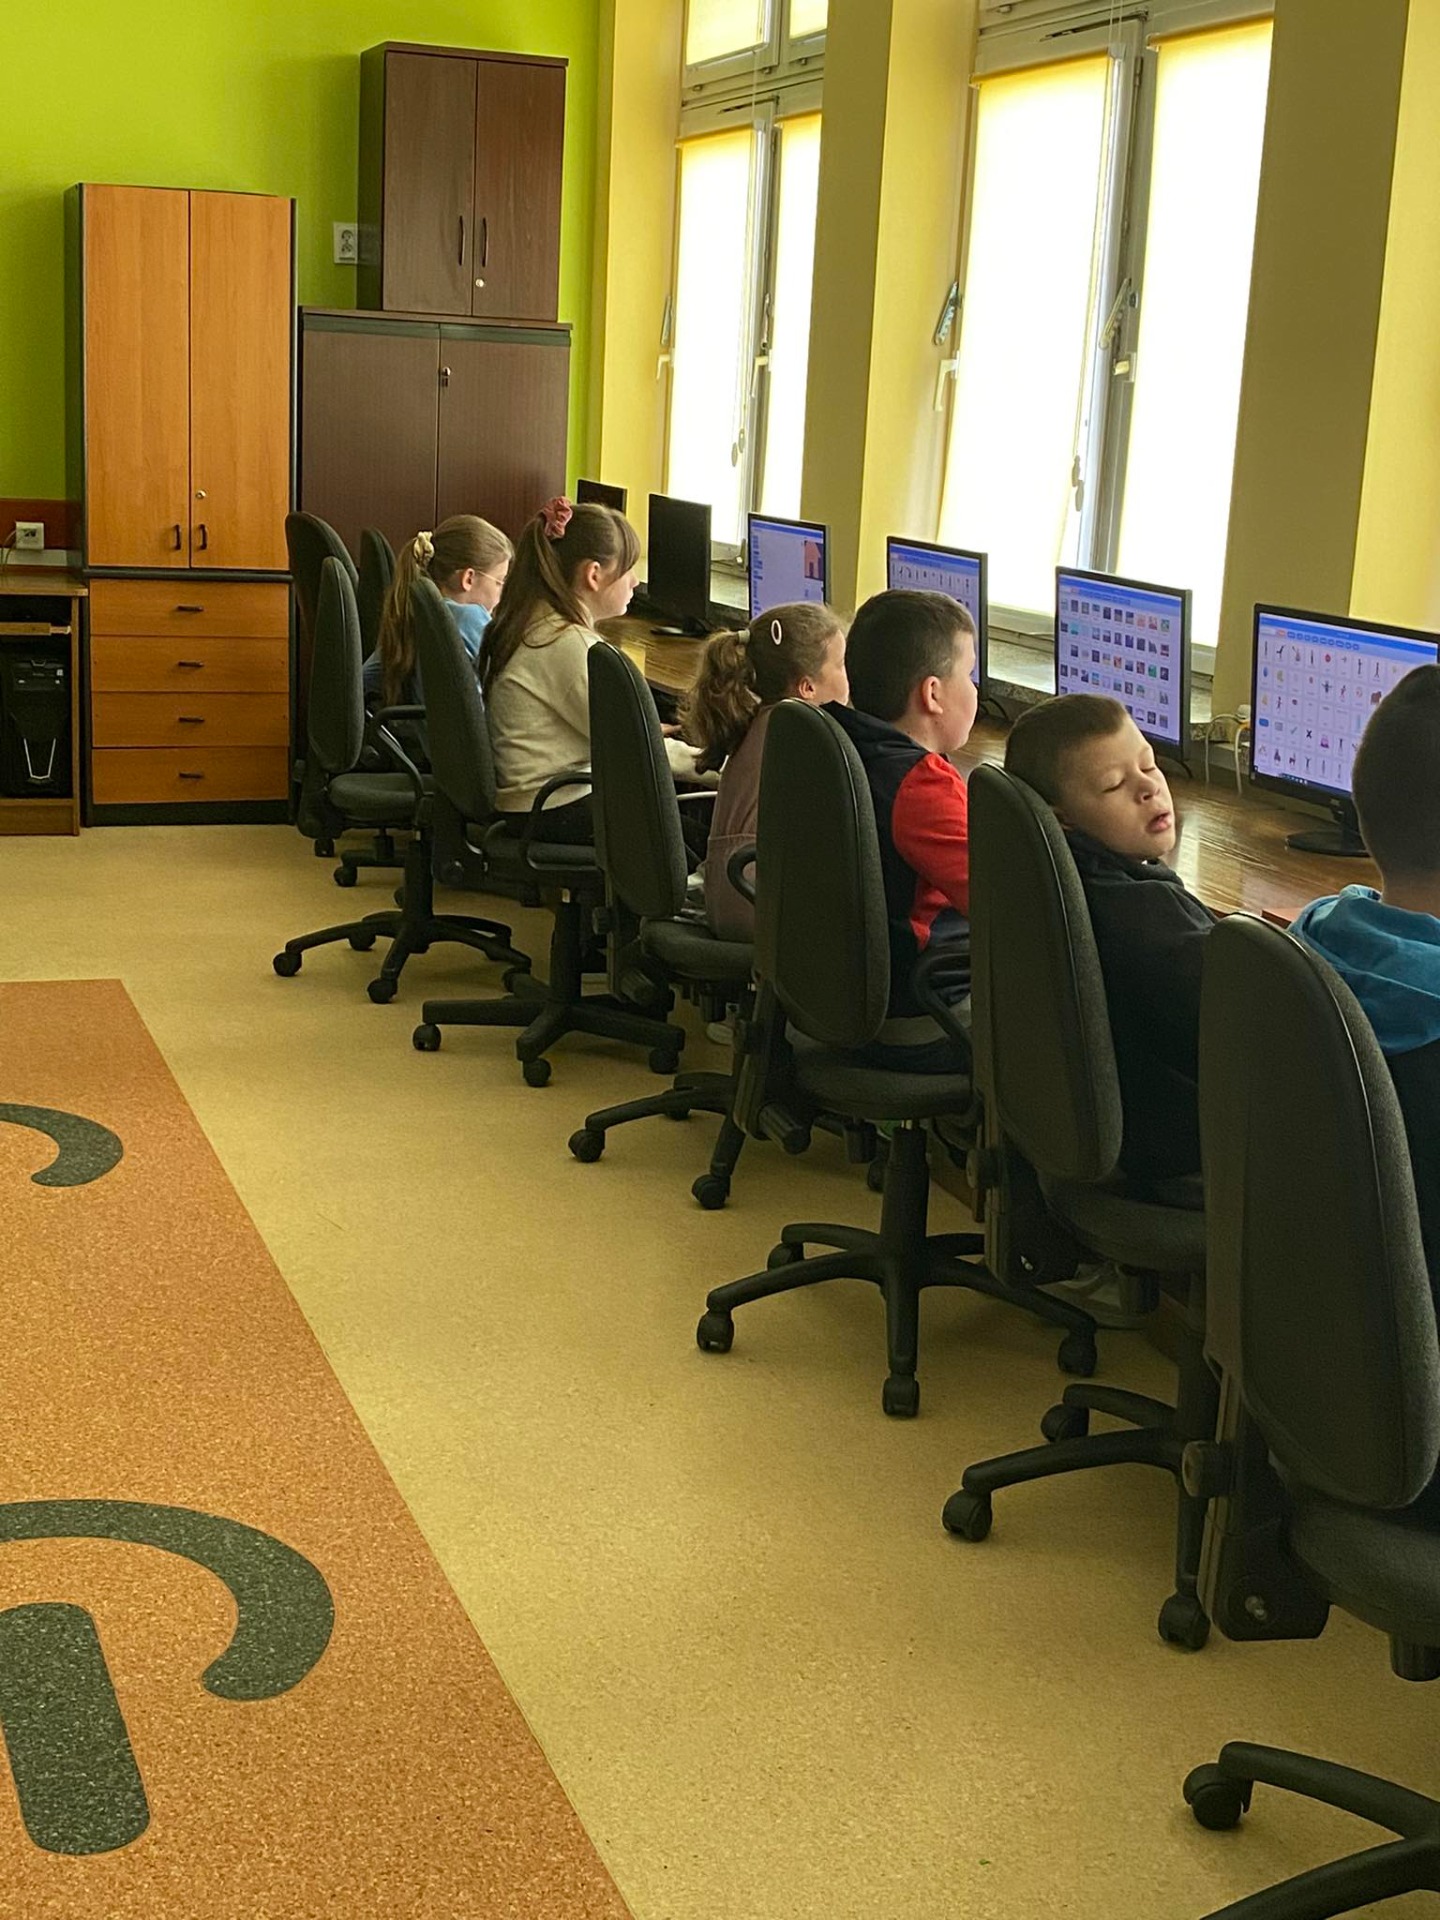 Uczniowie siedzą przy komputerach w sali informatycznej i tworzą animacje w programie Scratch